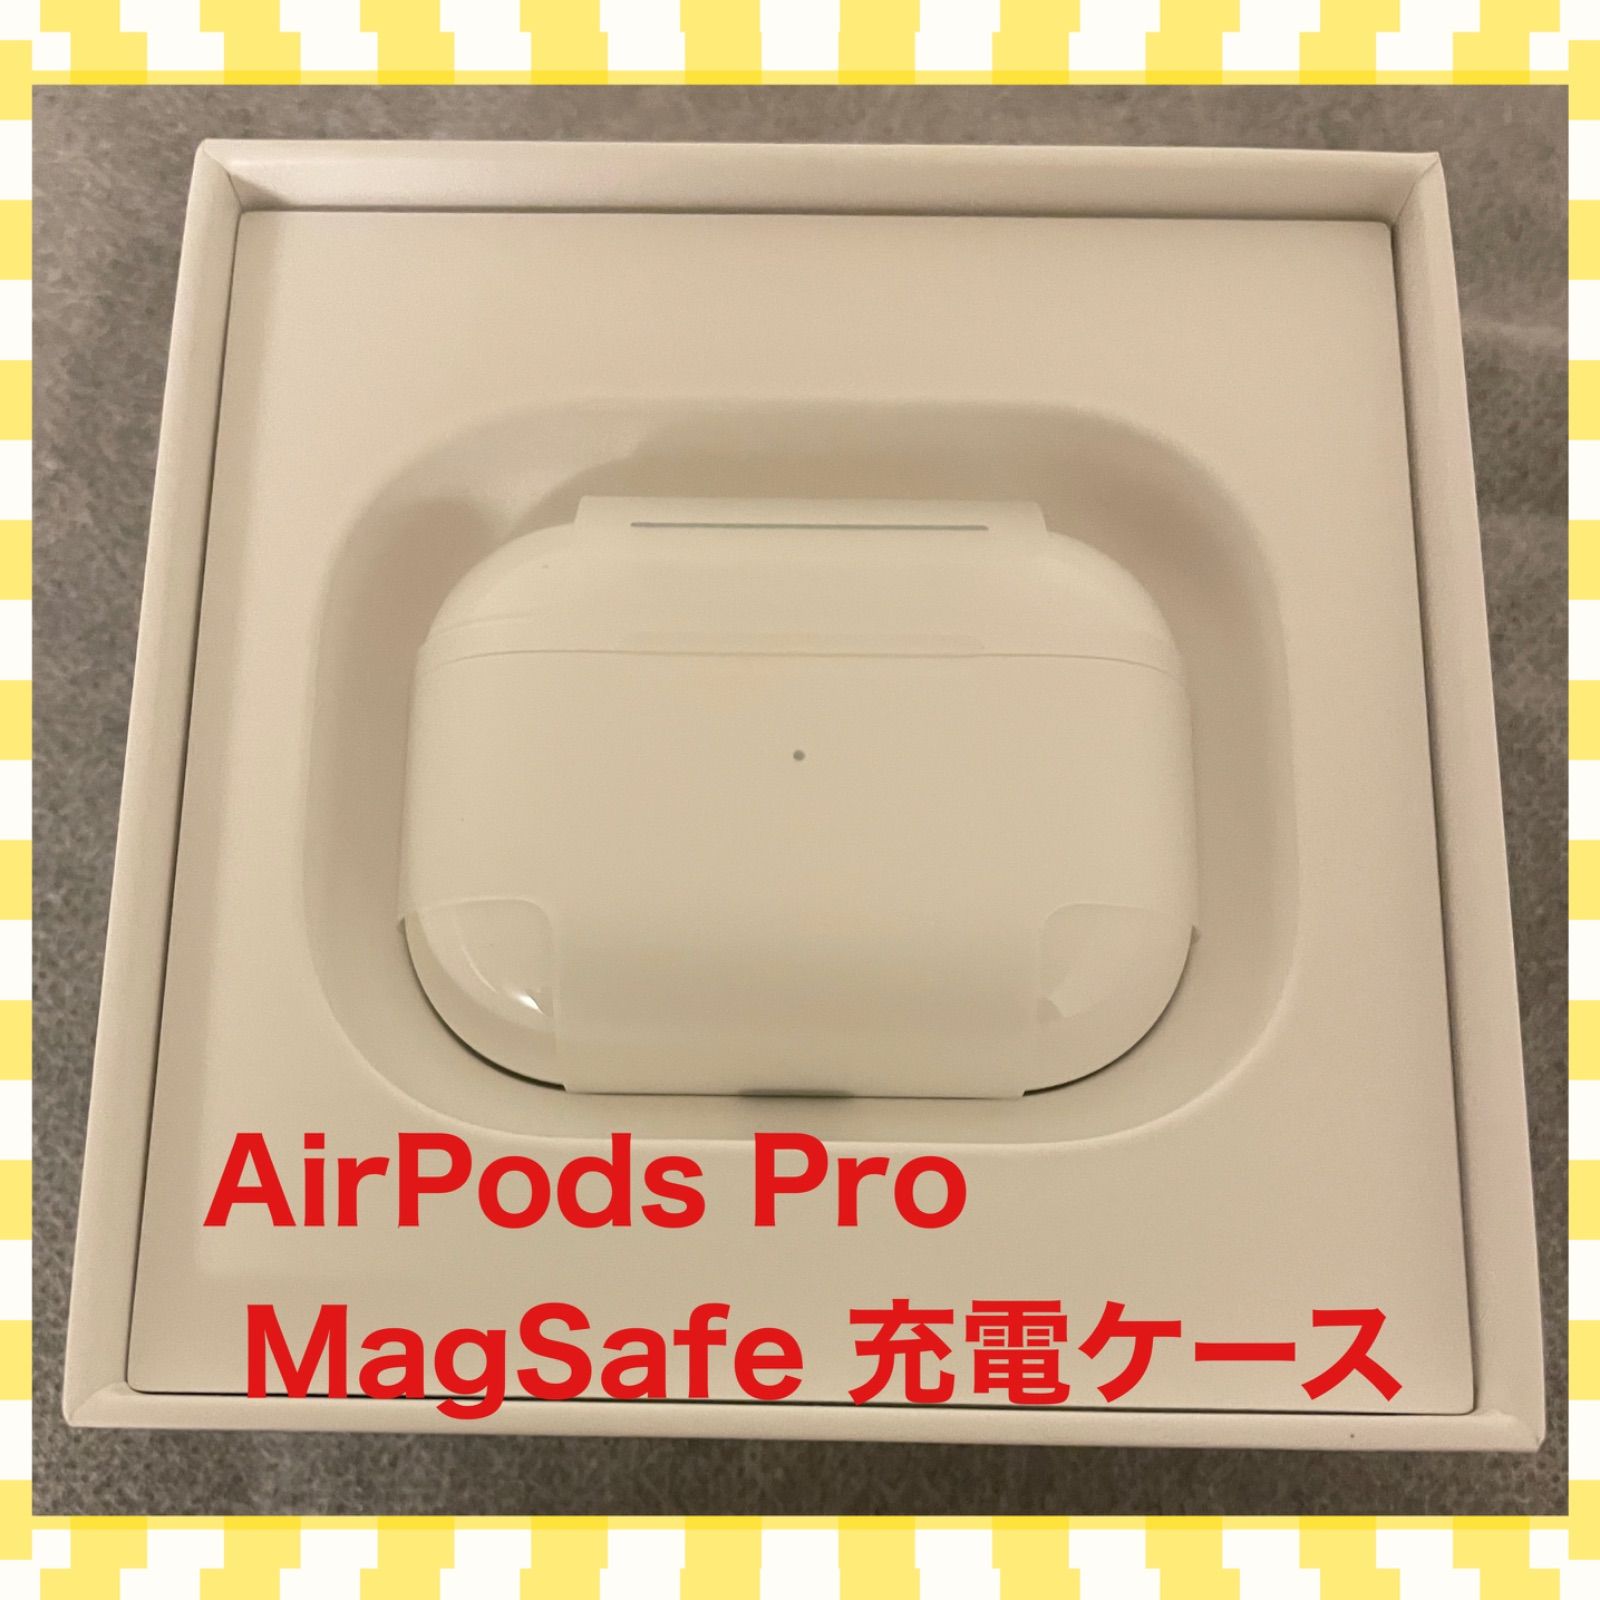 はい購入希望しておりますAirPods Pro (第 2 世代) MagSafe充電ケース(USB-C)